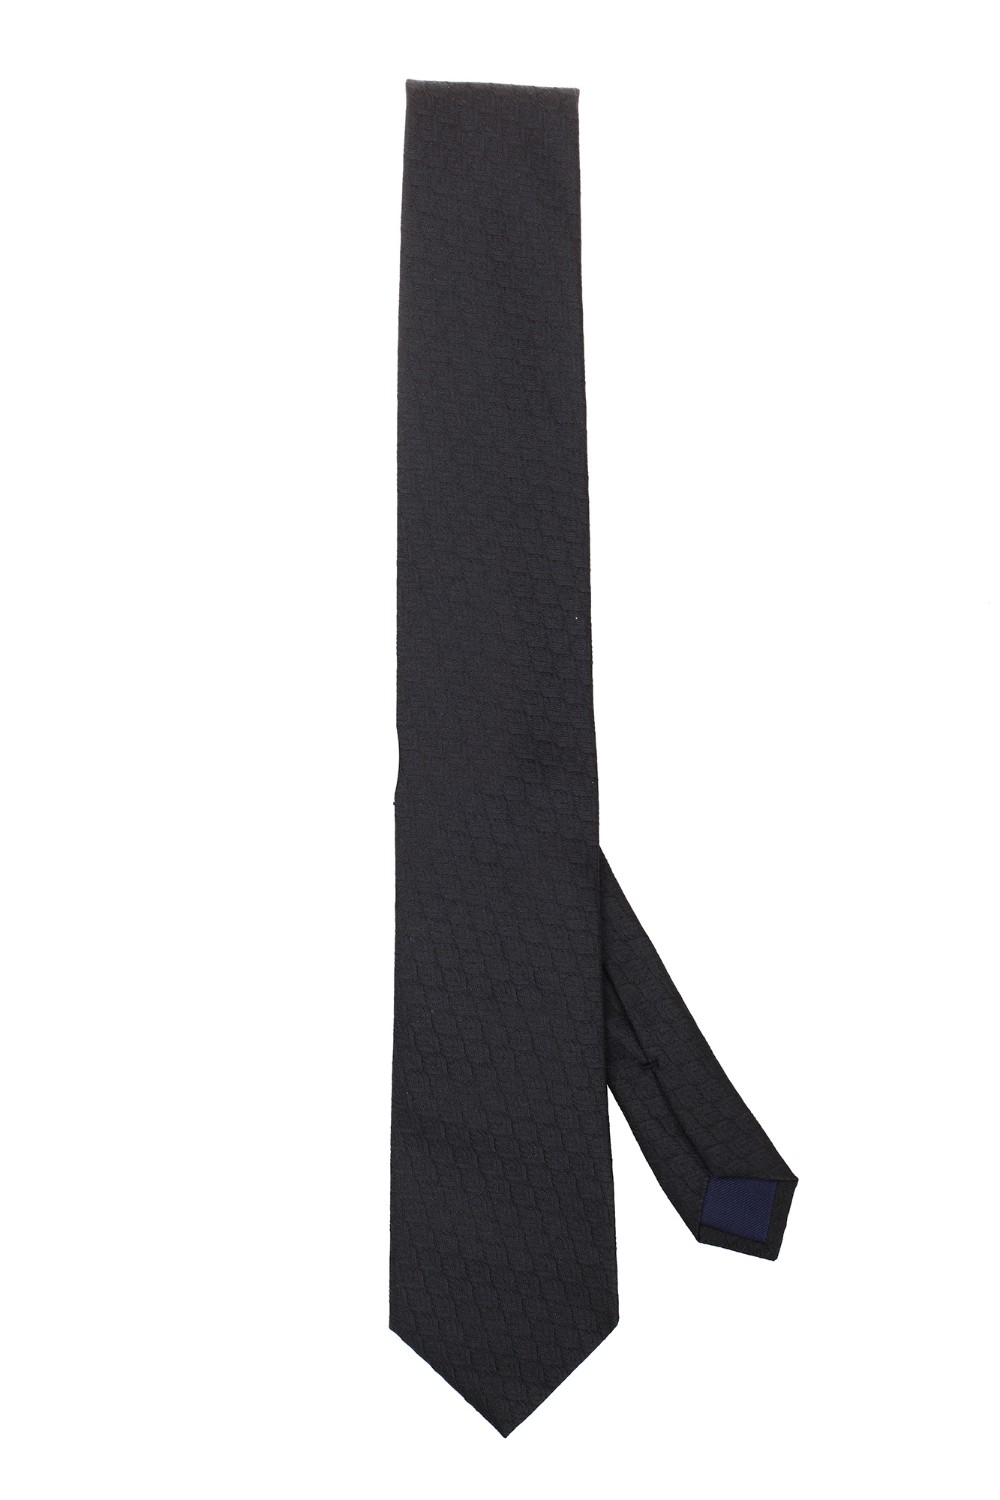 shop CORNELIANI  Cravatta: Corneliani cravatta in misto seta nera.
Microfantasia tono su tono.
Composizione: 60% poliestere 40% seta.
Made in Italy.. 91U906 3120484-020 number 7964306